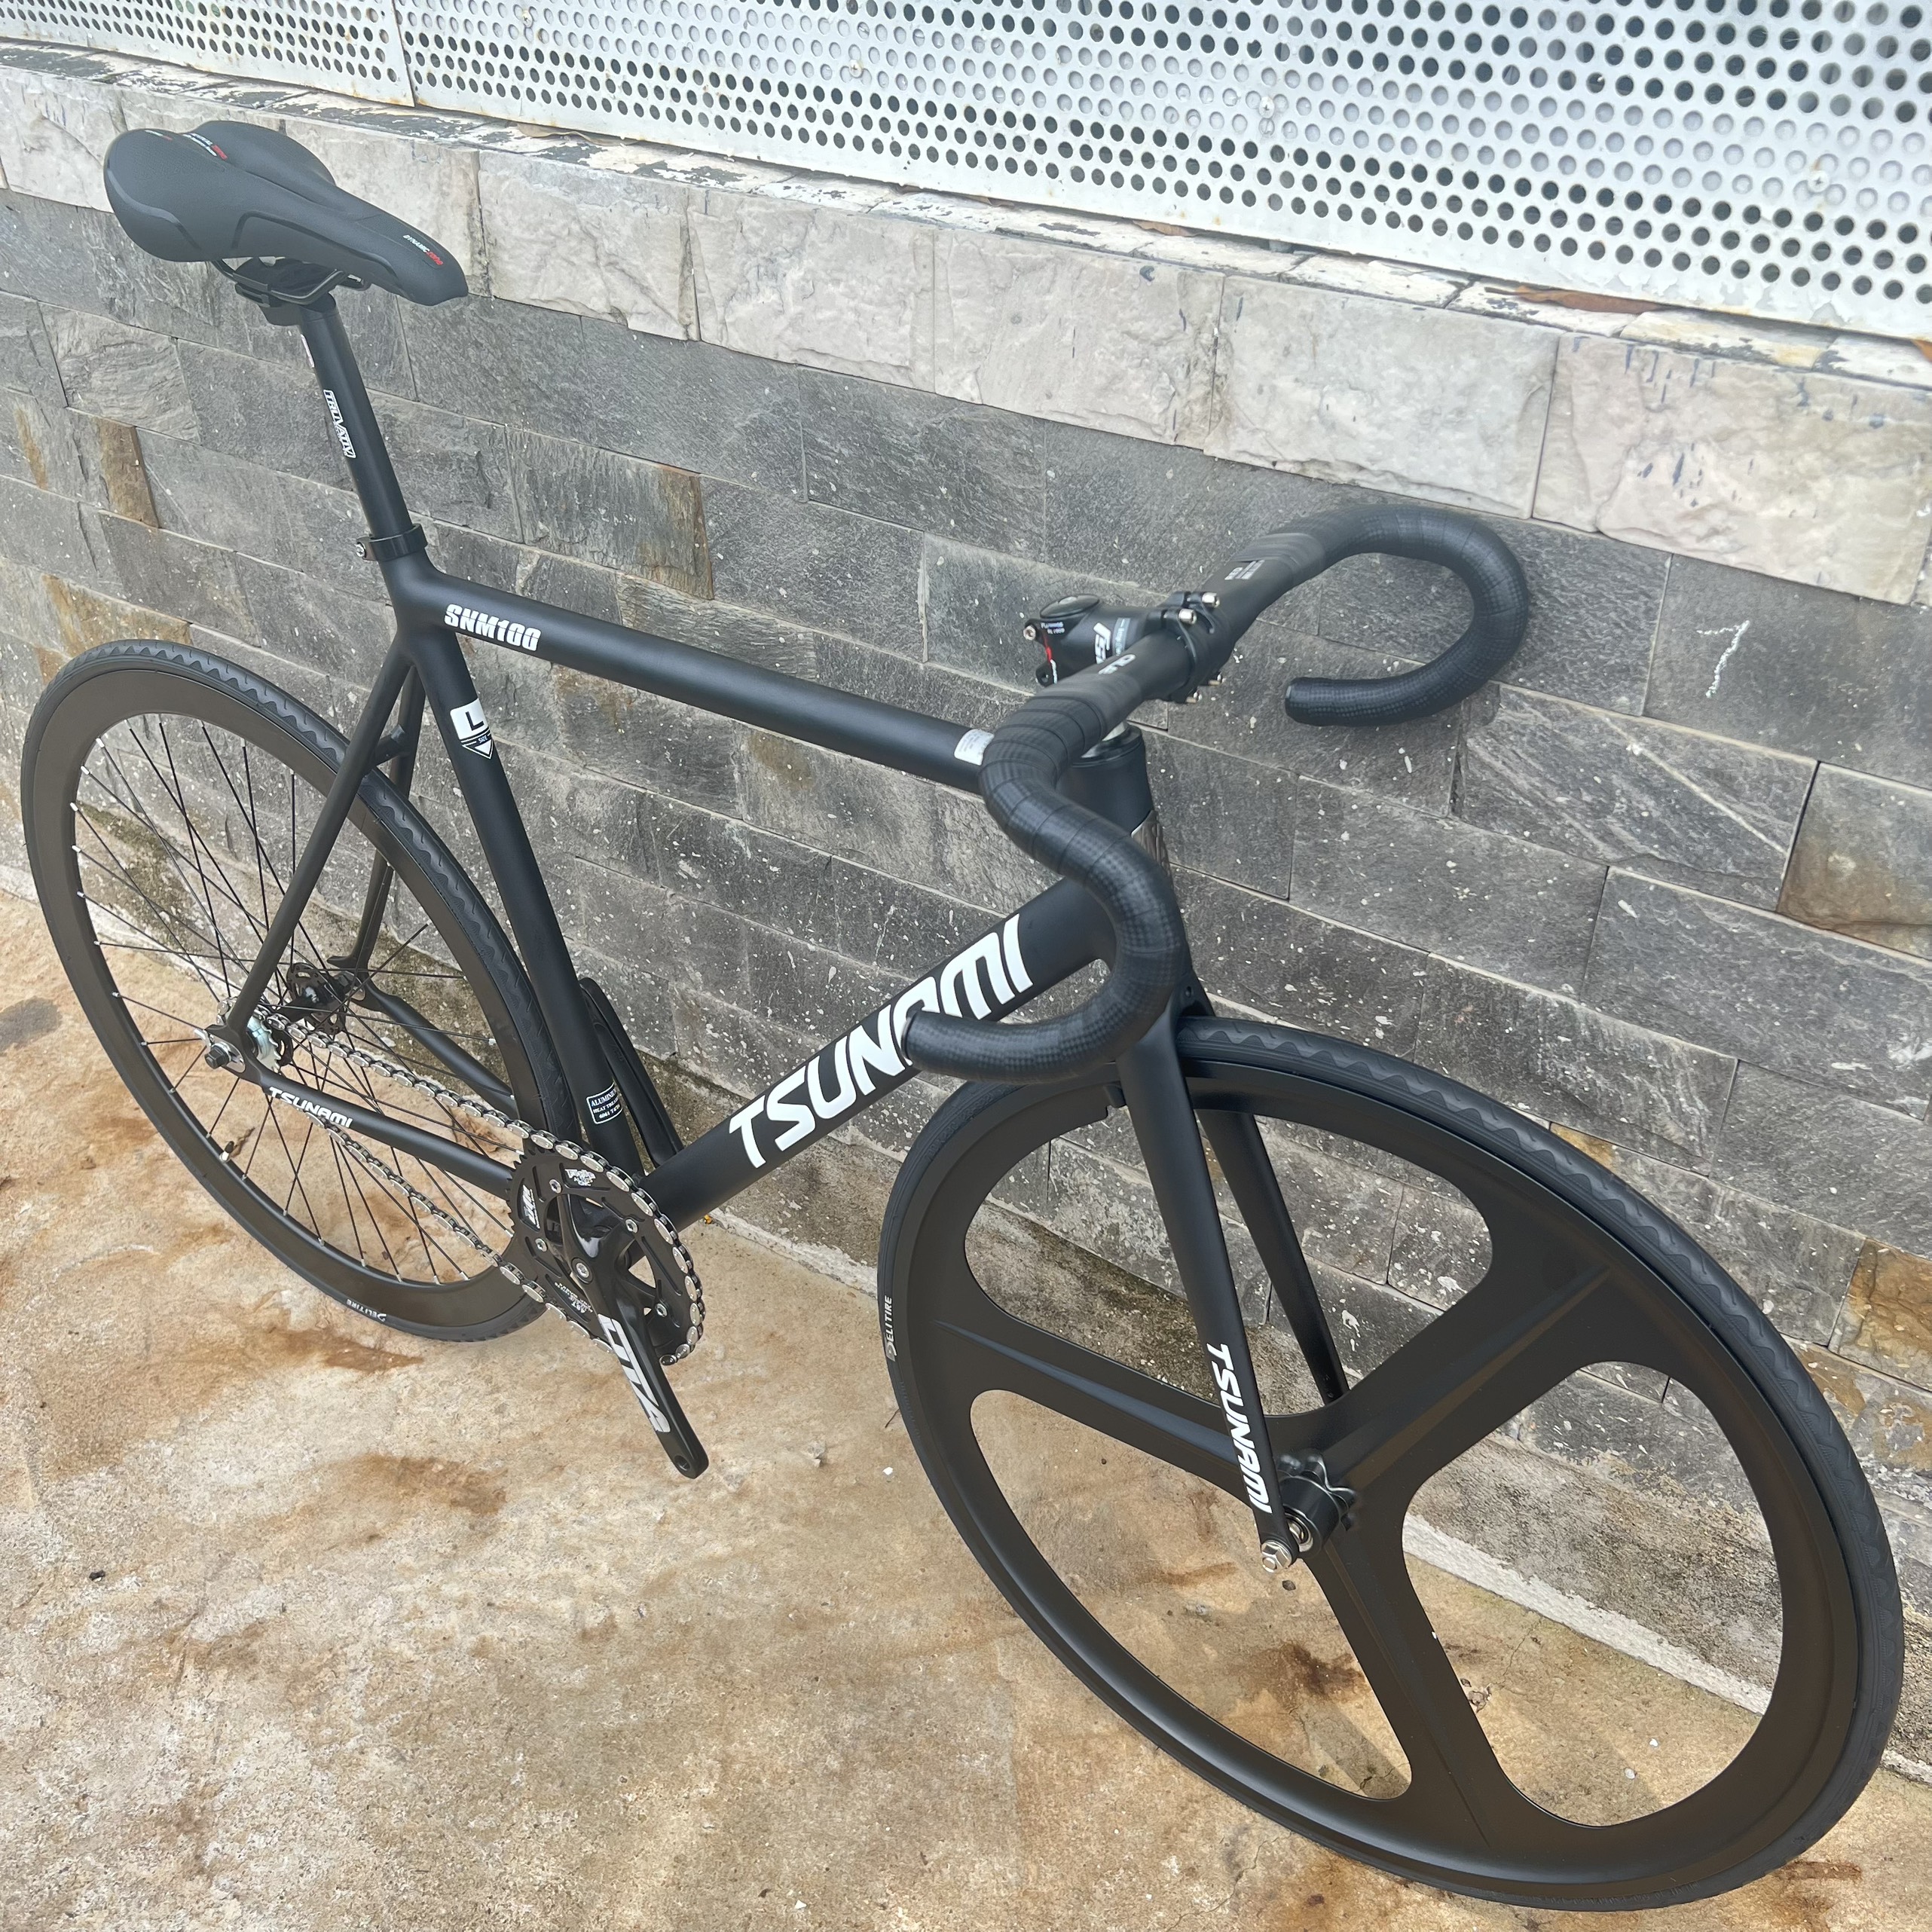 Xe đạp fixed gear TSUNAMI SNM100 nâng cao trước 3 đao đen - Đen chữ trắng